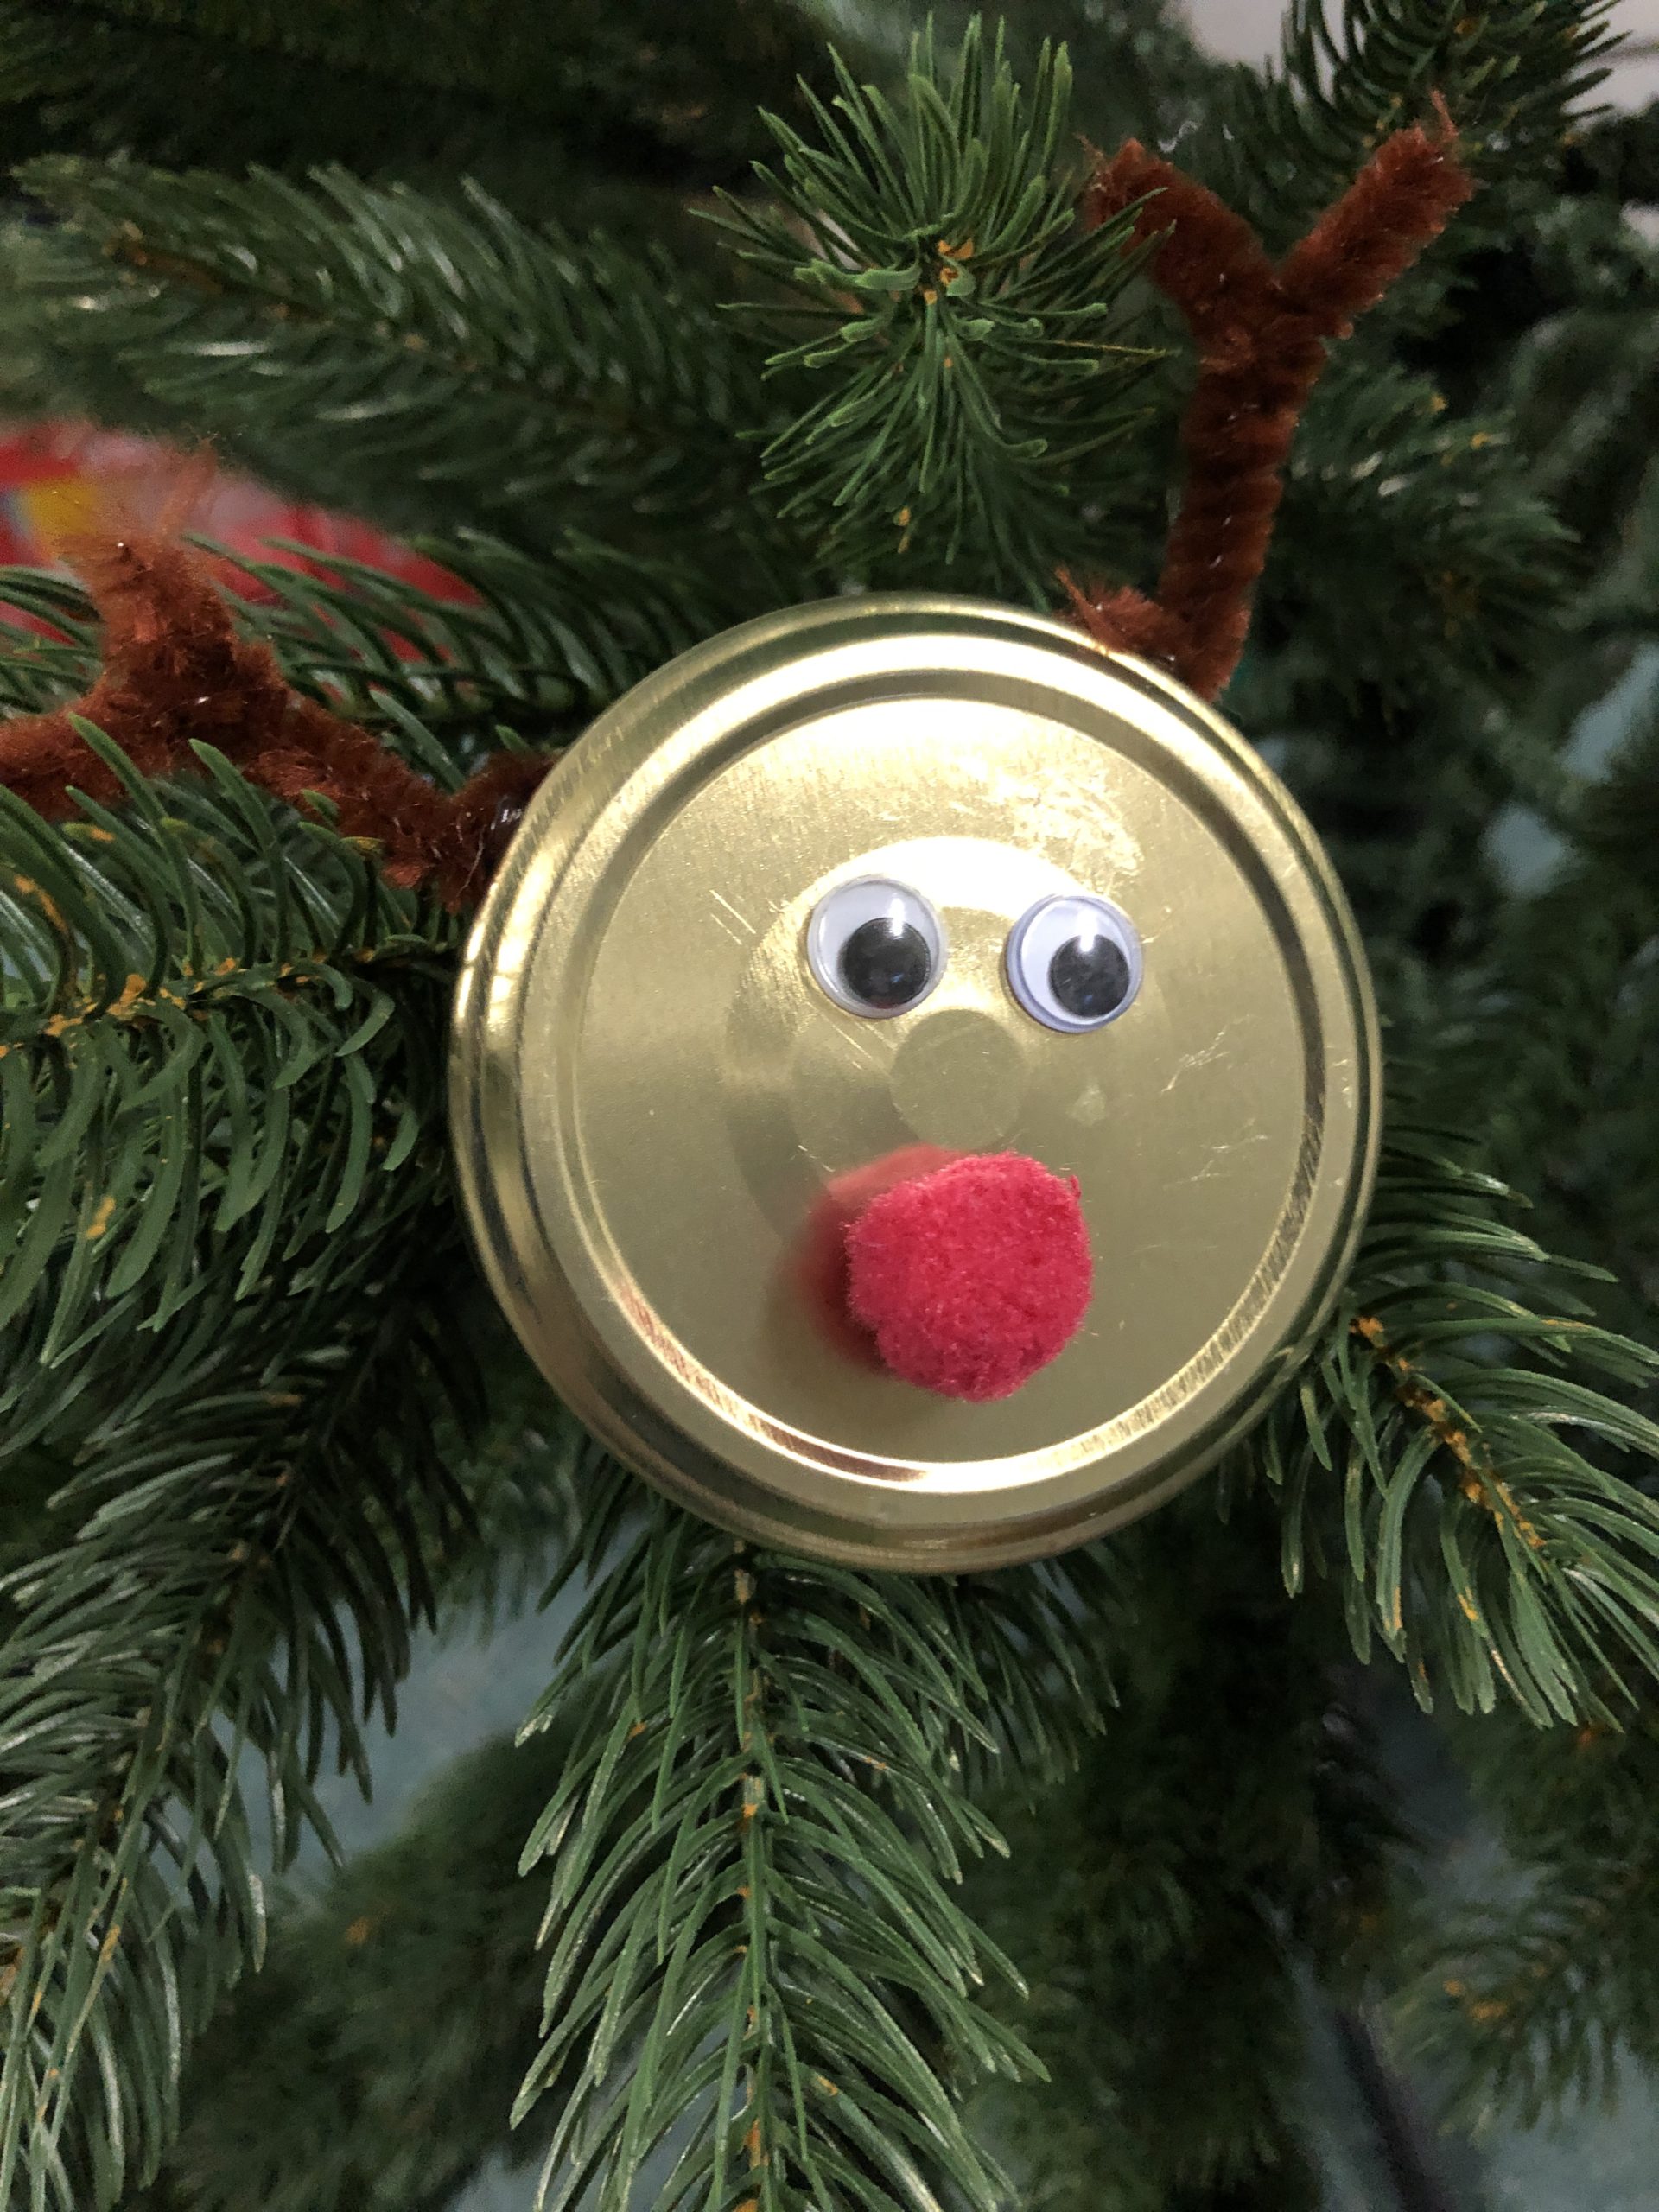 Bild zum Schritt 10 für das Bastel- und DIY-Abenteuer für Kinder: 'Als Schmuck am Weihnachtsbaum, an einem Strauß aus Tannenzweigen oder...'